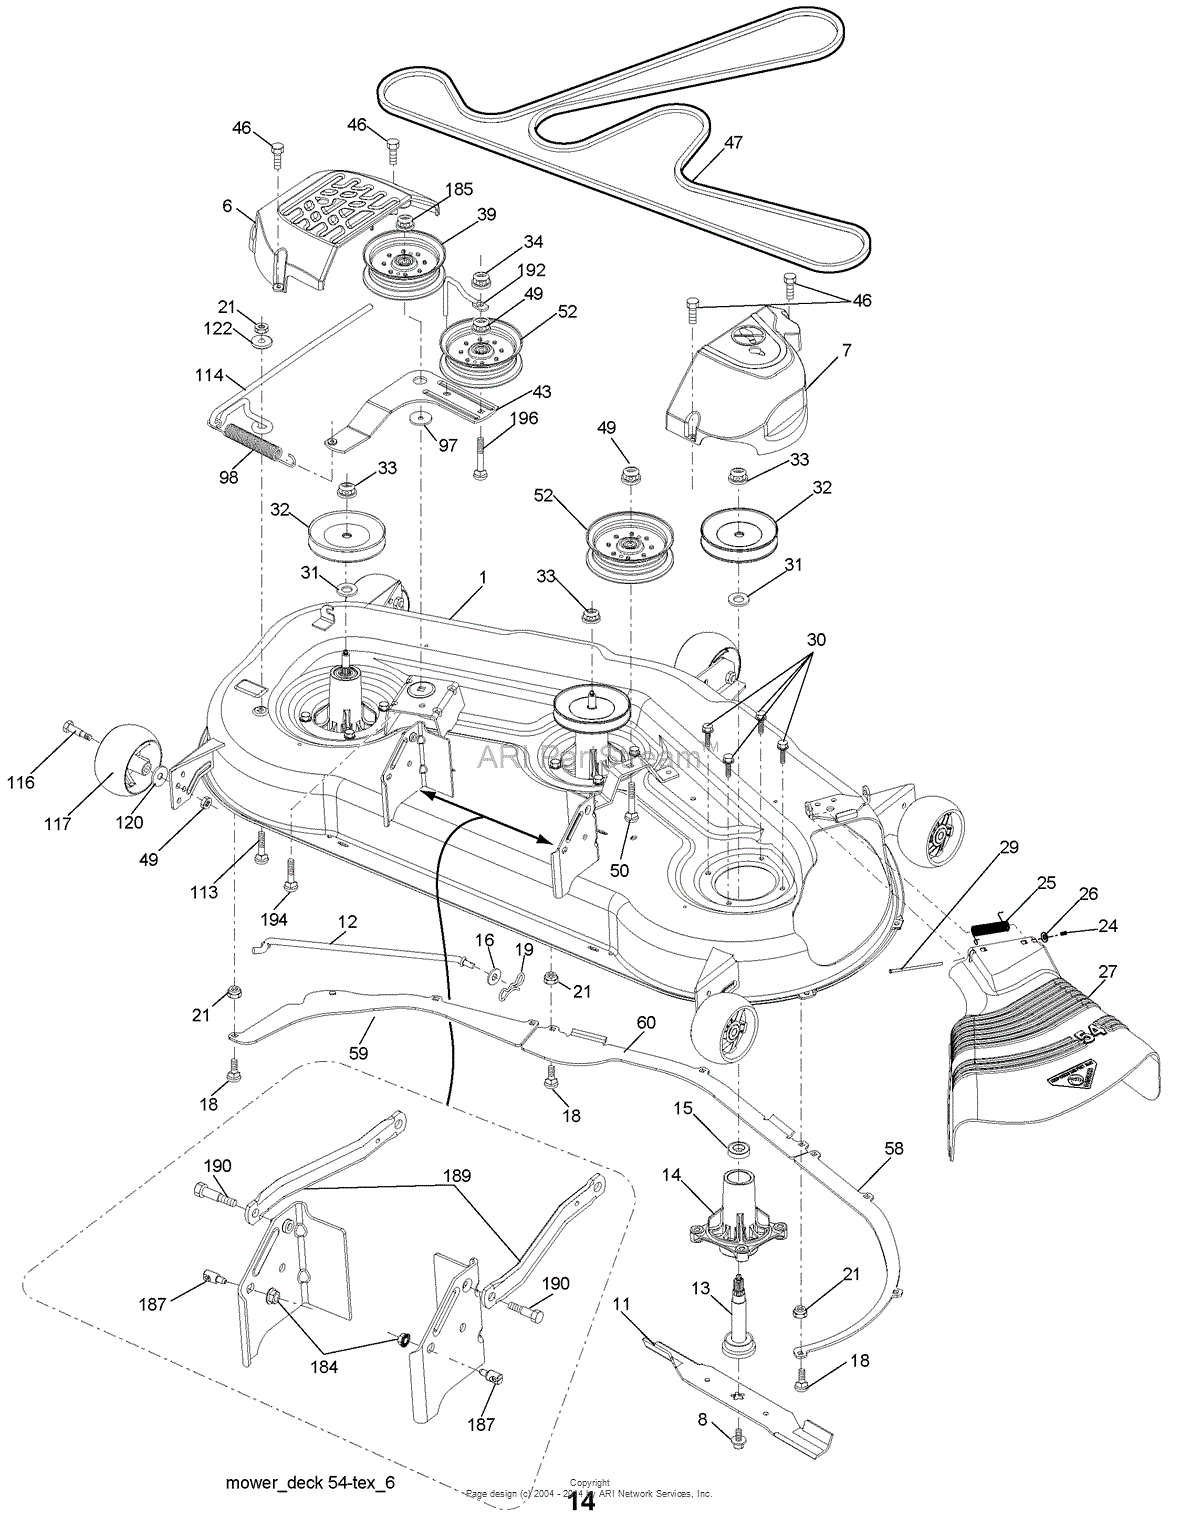 33 Craftsman 54 Mower Deck Parts Diagram - Wiring Diagram List